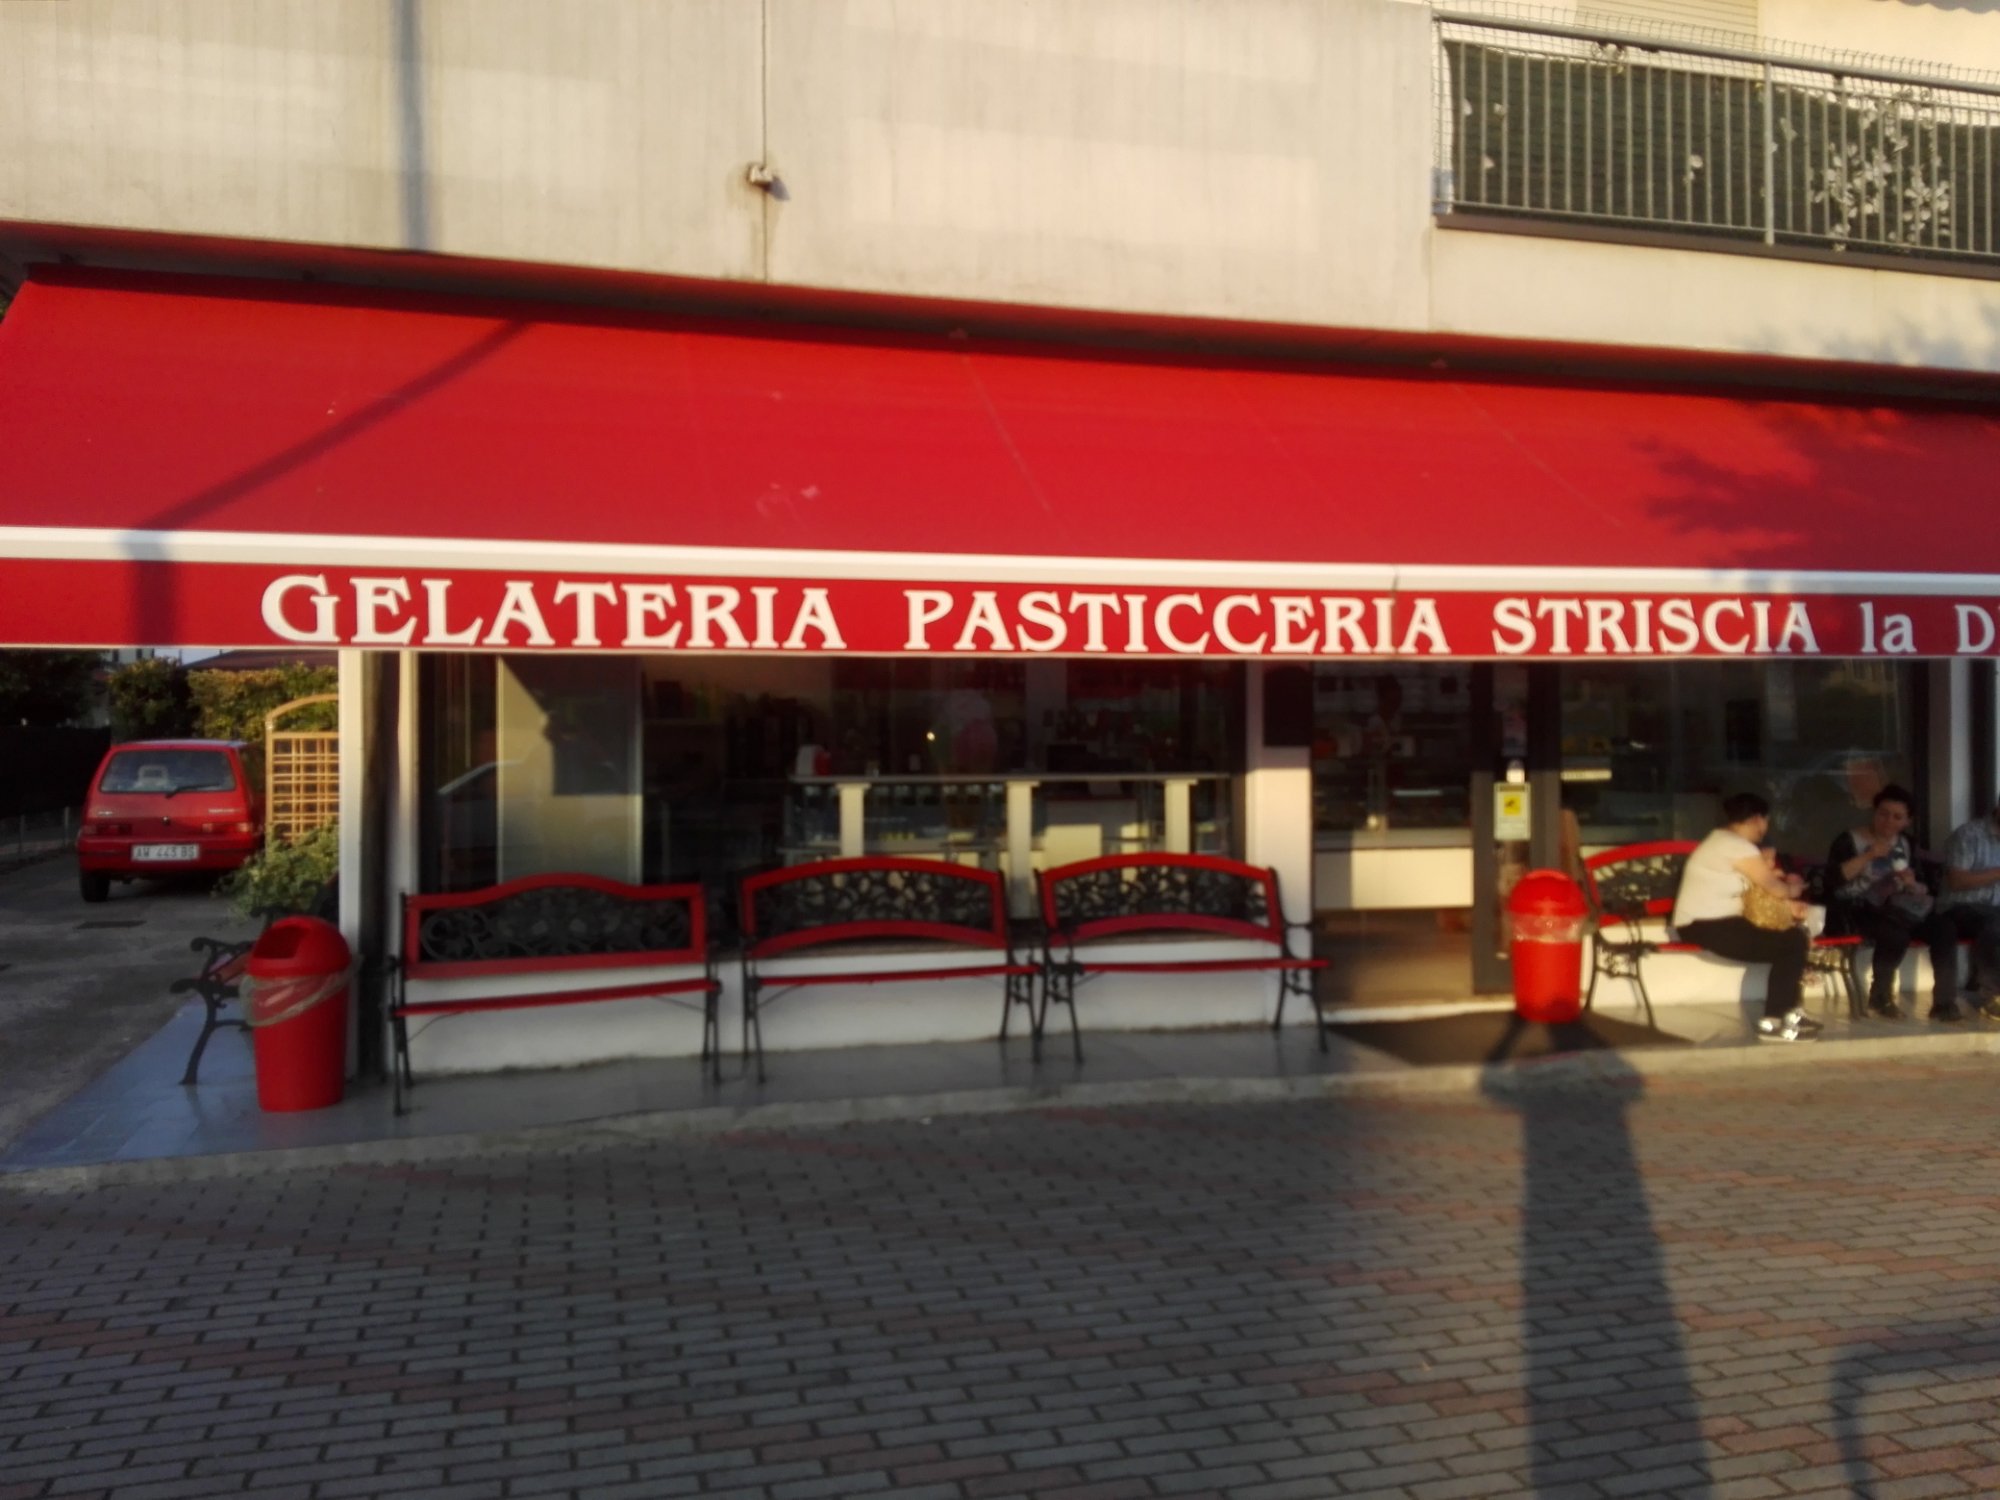 Striscia La Delizia - Gelateria Pasticceria, Casalserugo